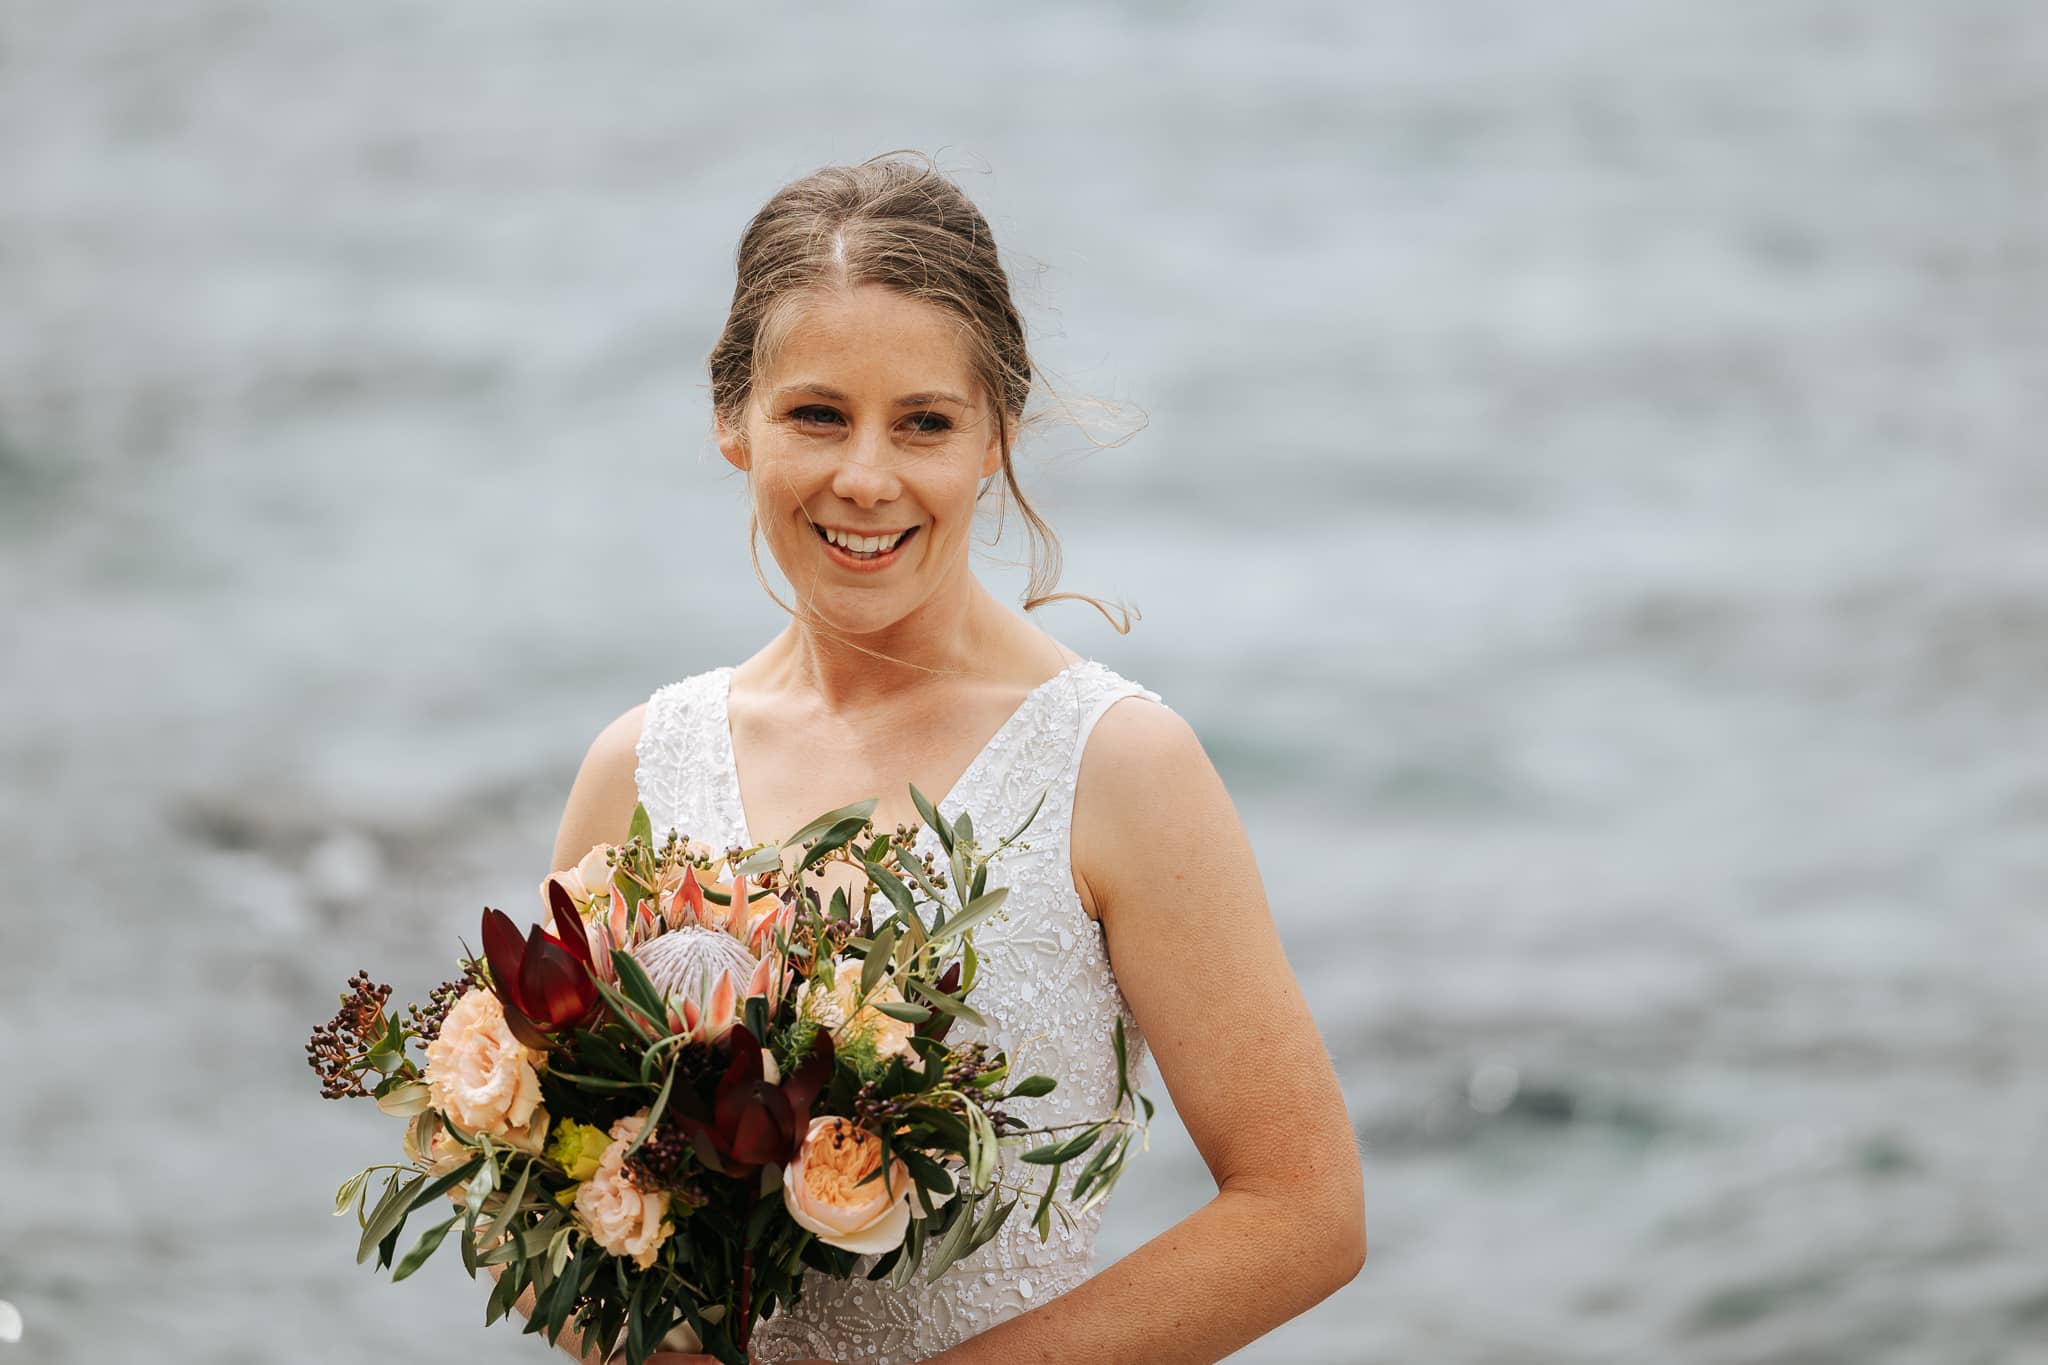 Luxury Elopement wedding in Queenstown New Zealand with helicopter wedding at Lochnagar